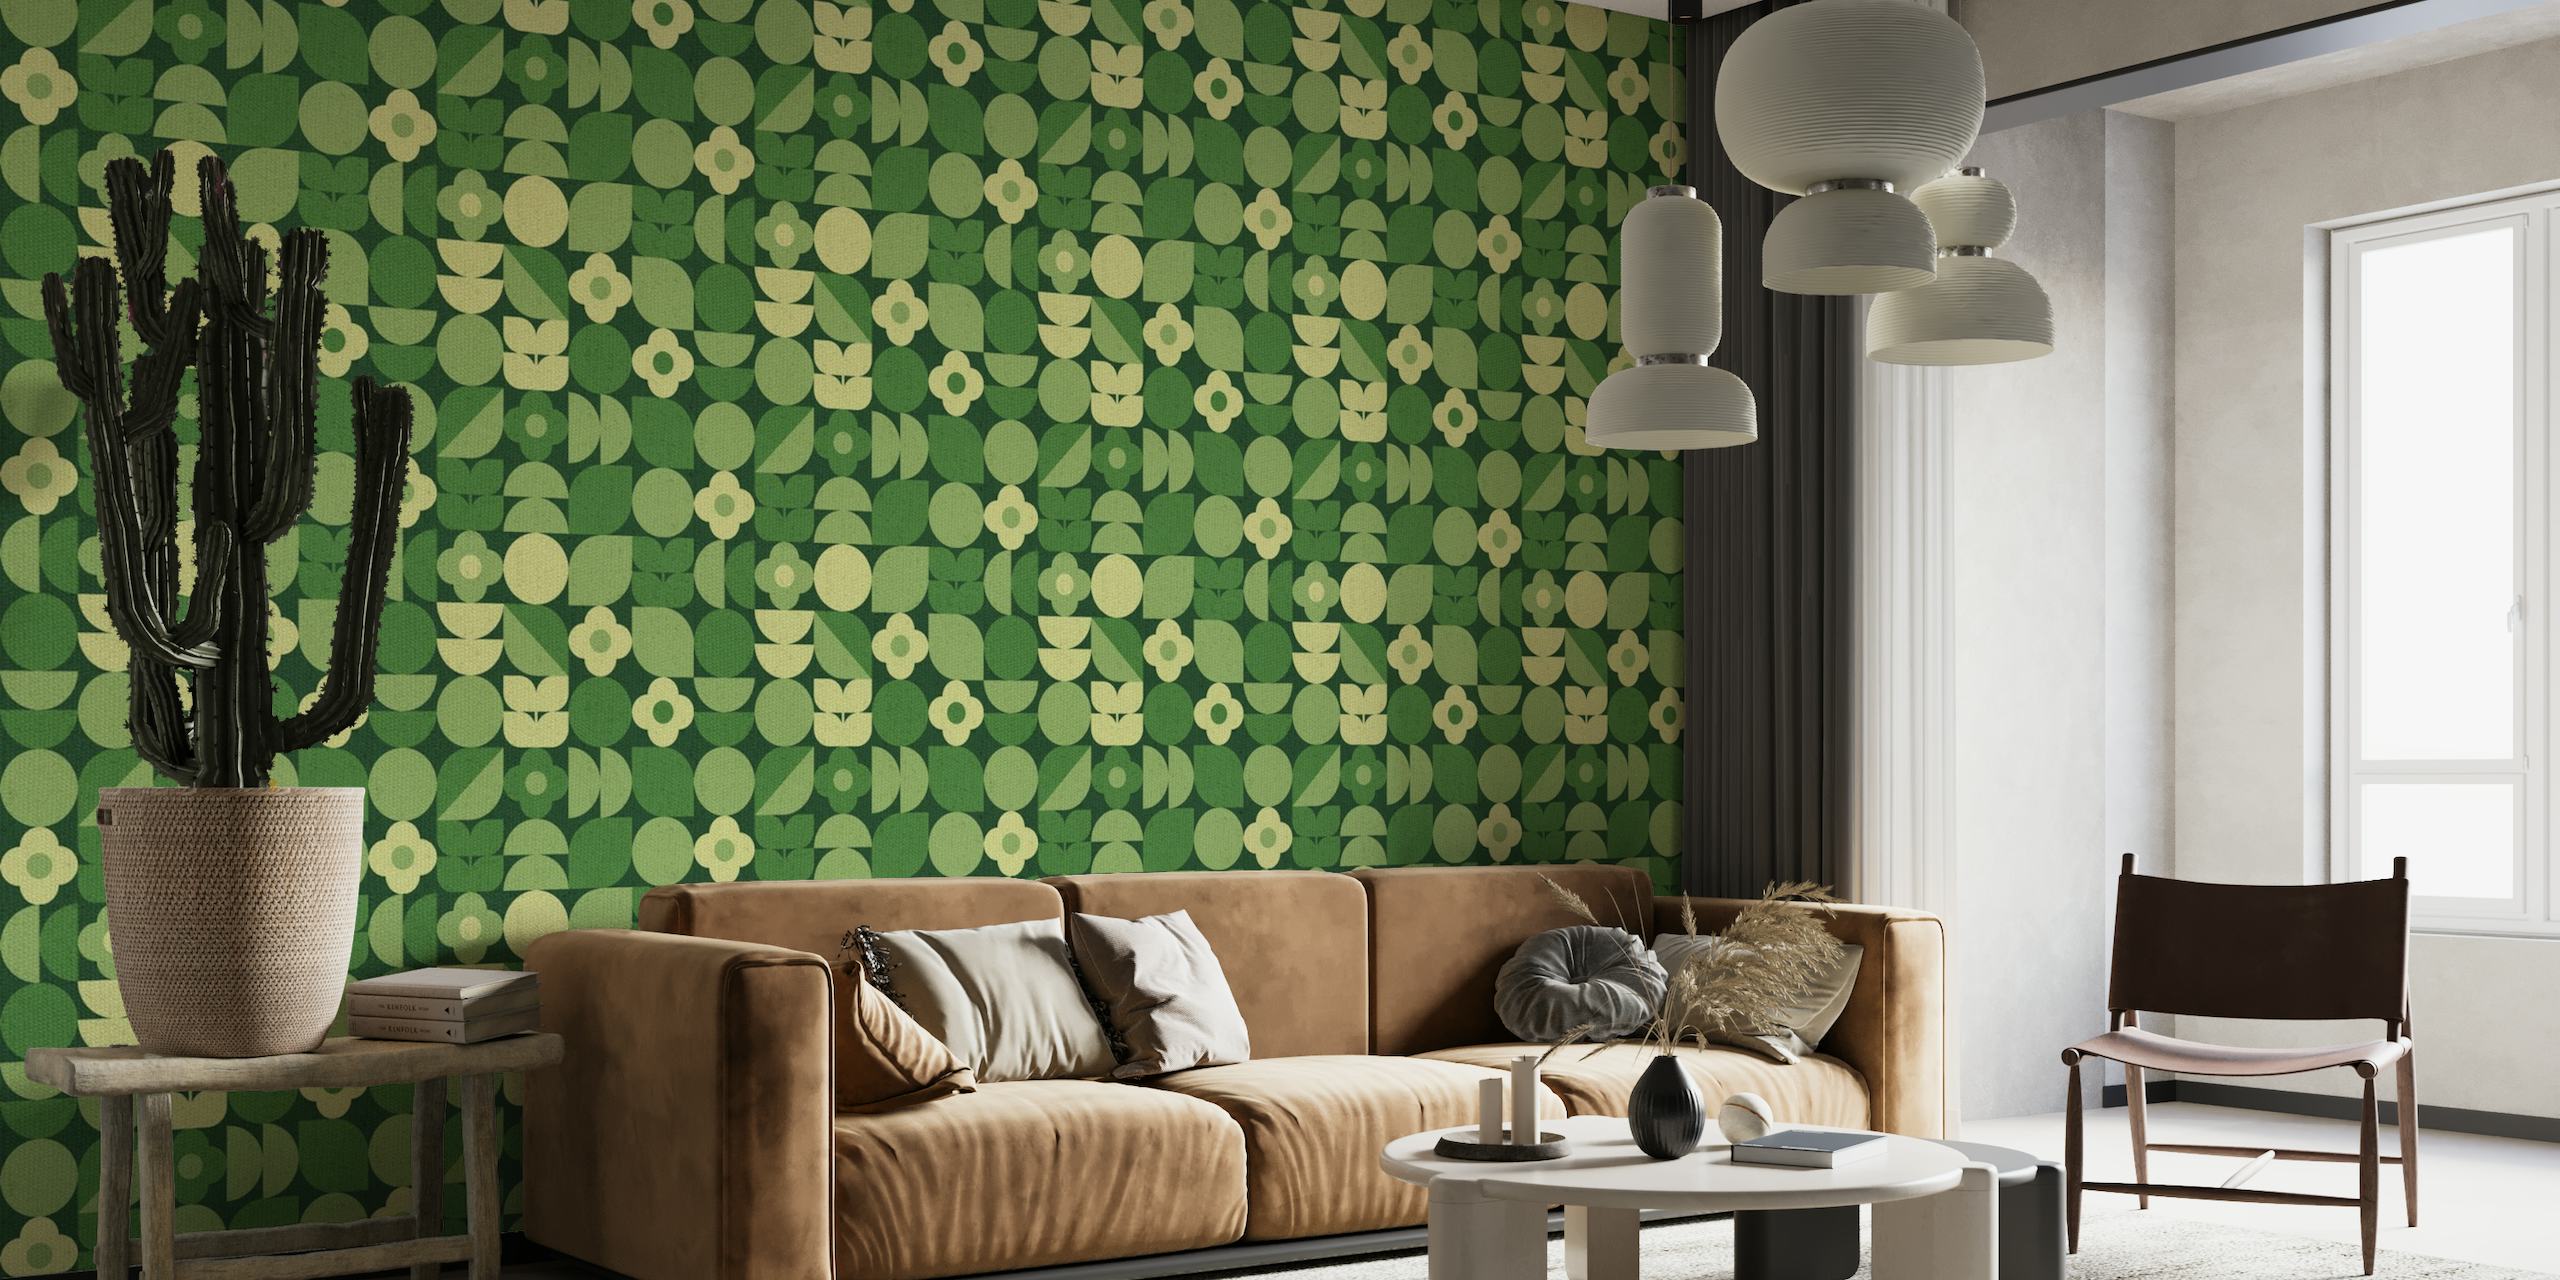 Geo Bauhaus Green Floral Shapes behang